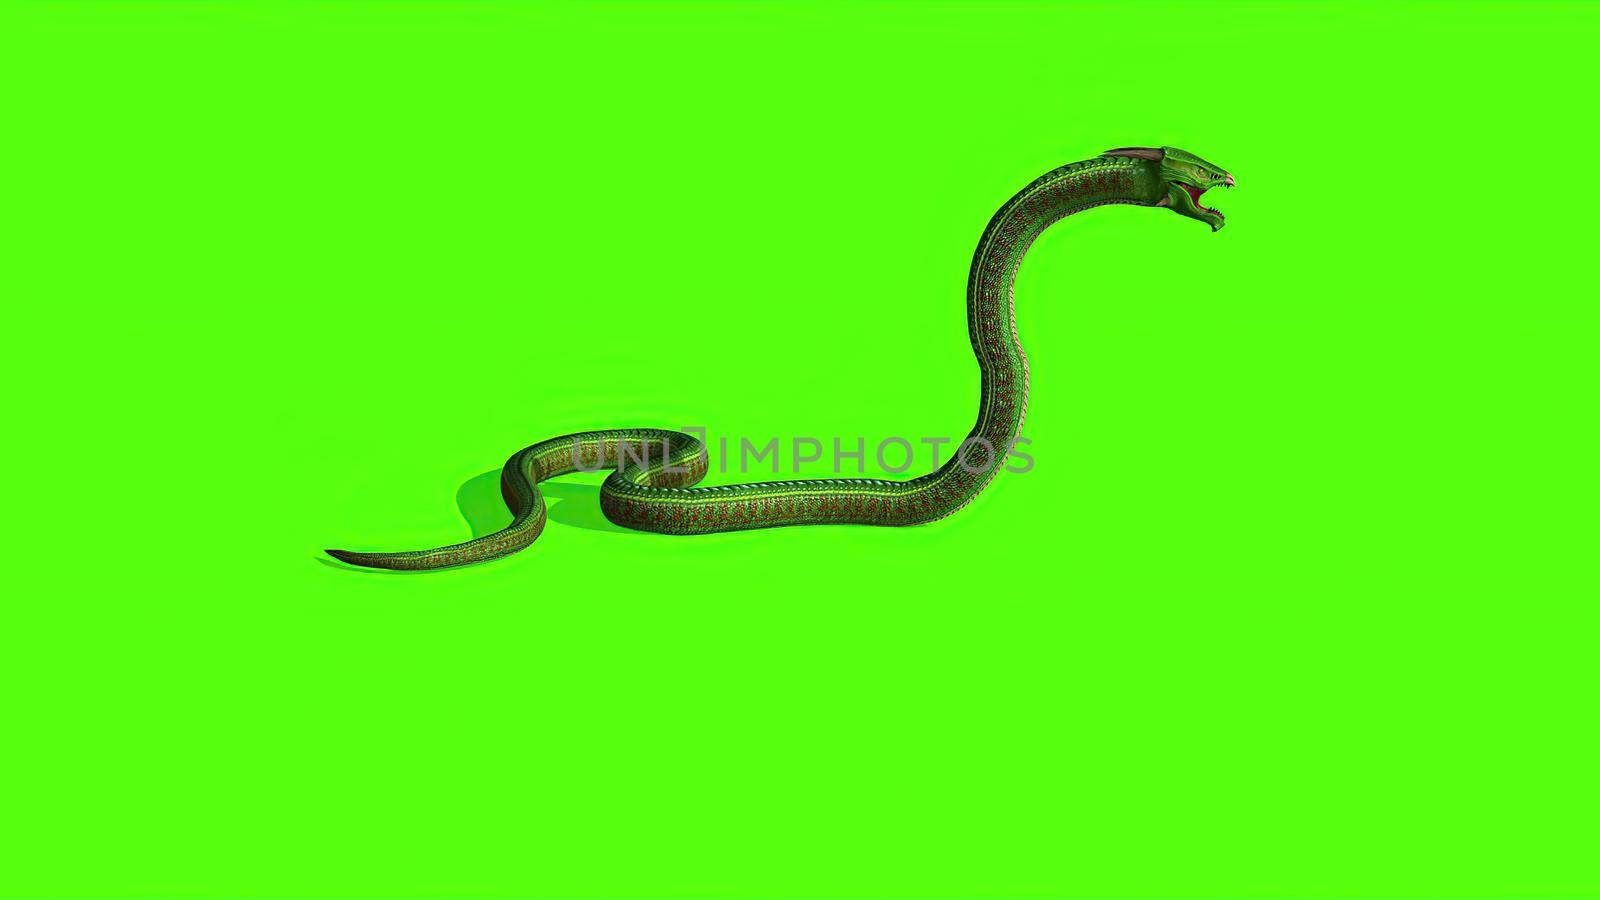 3d illustration - Snake on a Green Screen - background by vitanovski